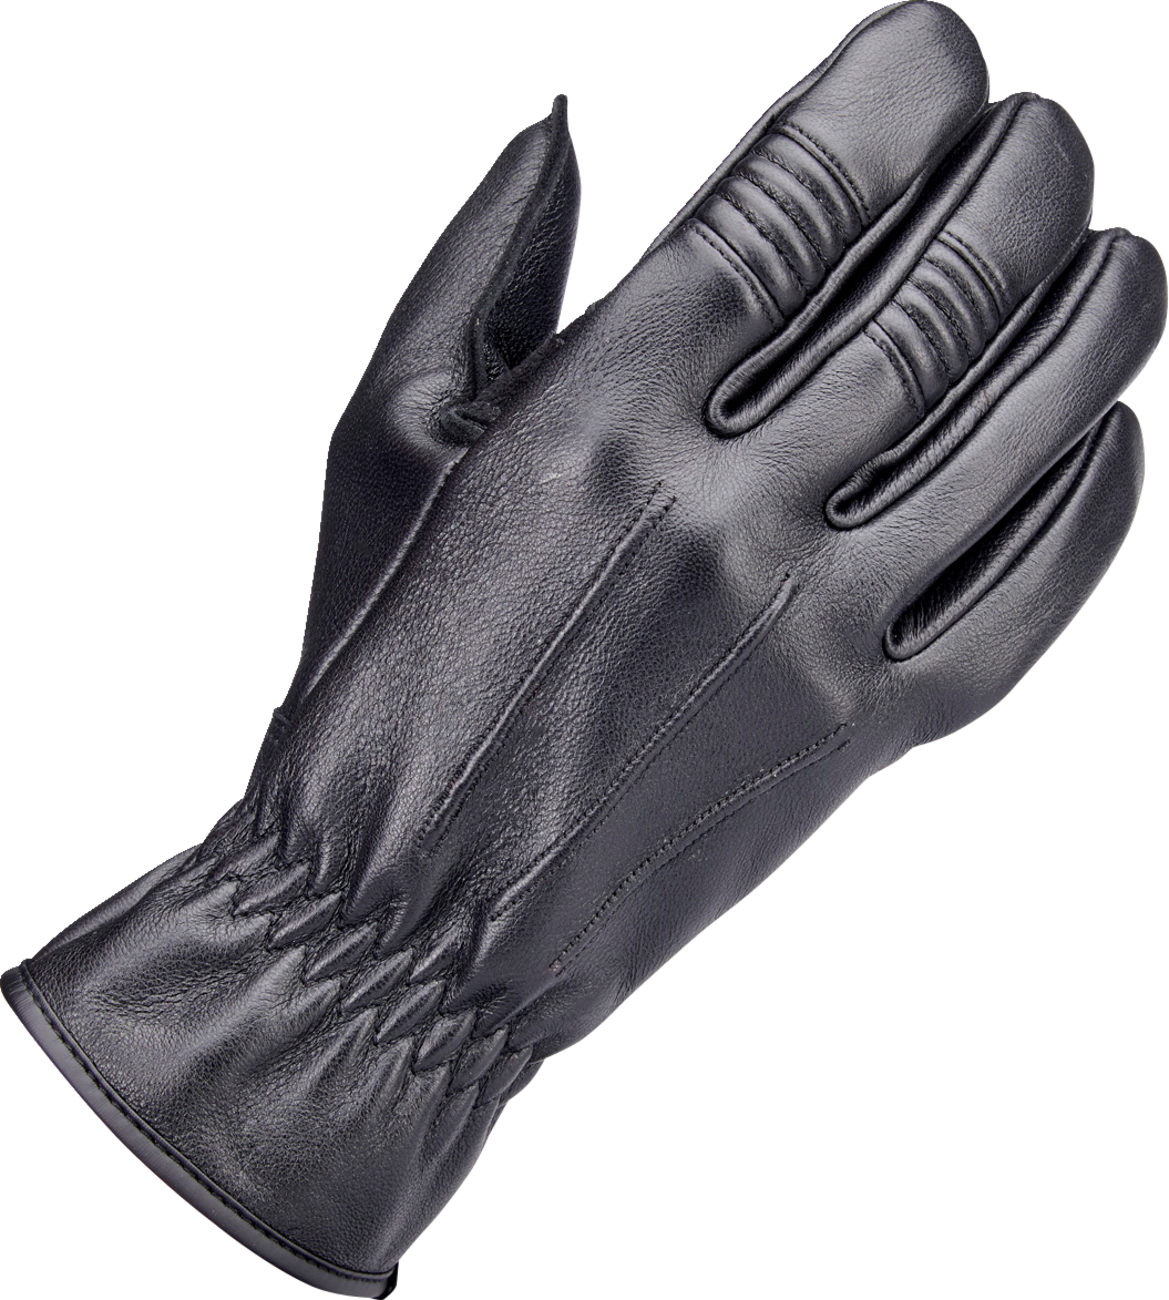 BILTWELL Work 2.0 Gloves - Black - Small 1510-0101-002